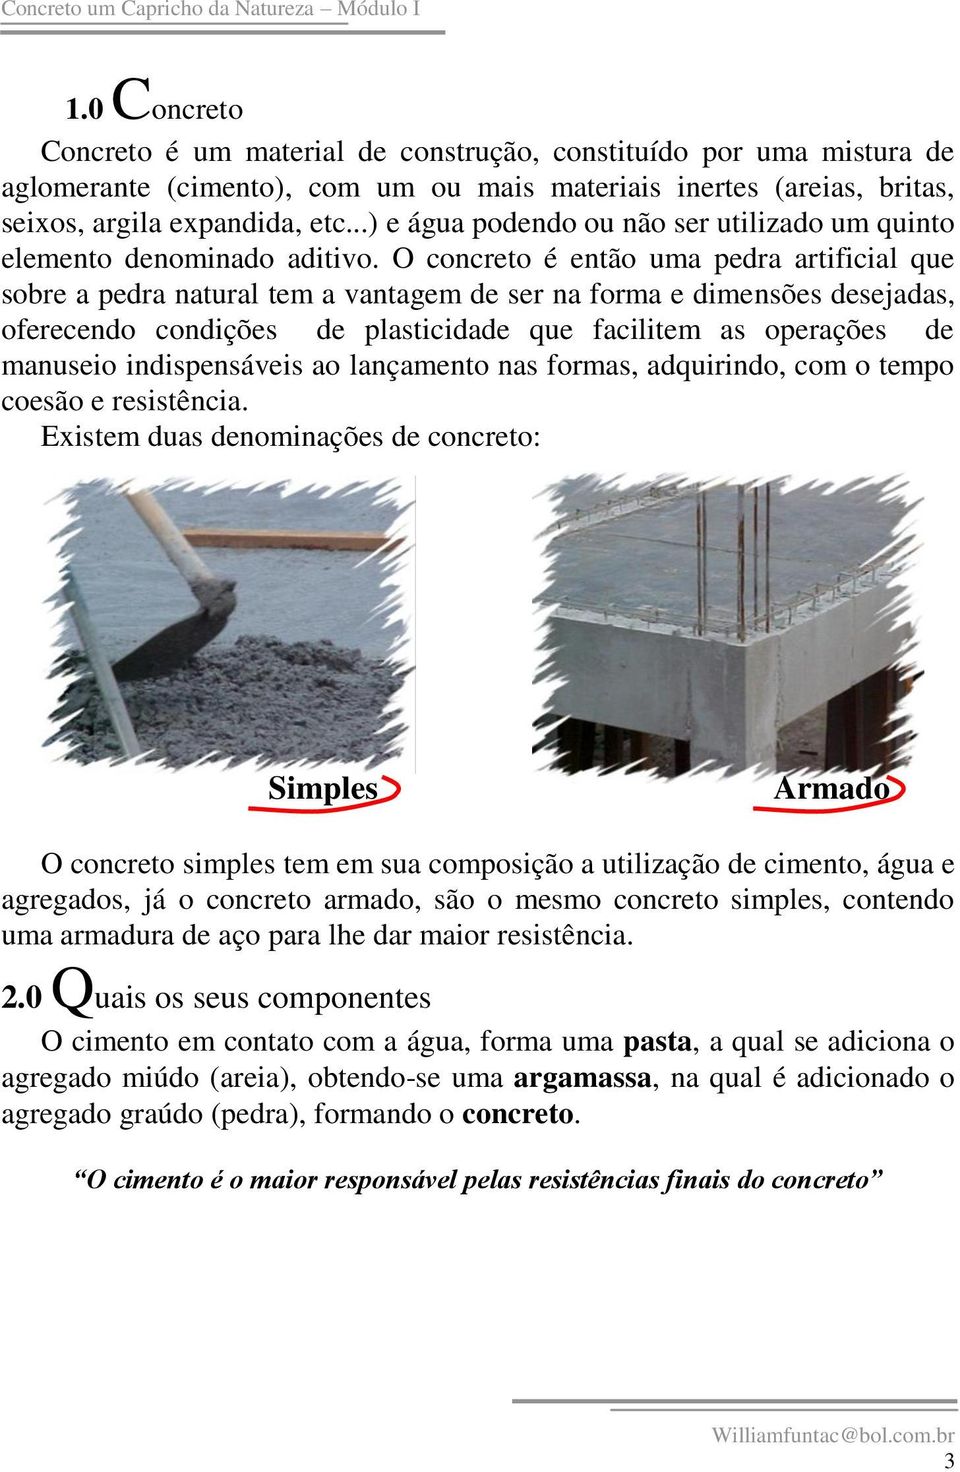 O concreto é então uma pedra artificial que sobre a pedra natural tem a vantagem de ser na forma e dimensões desejadas, oferecendo condições de plasticidade que facilitem as operações de manuseio